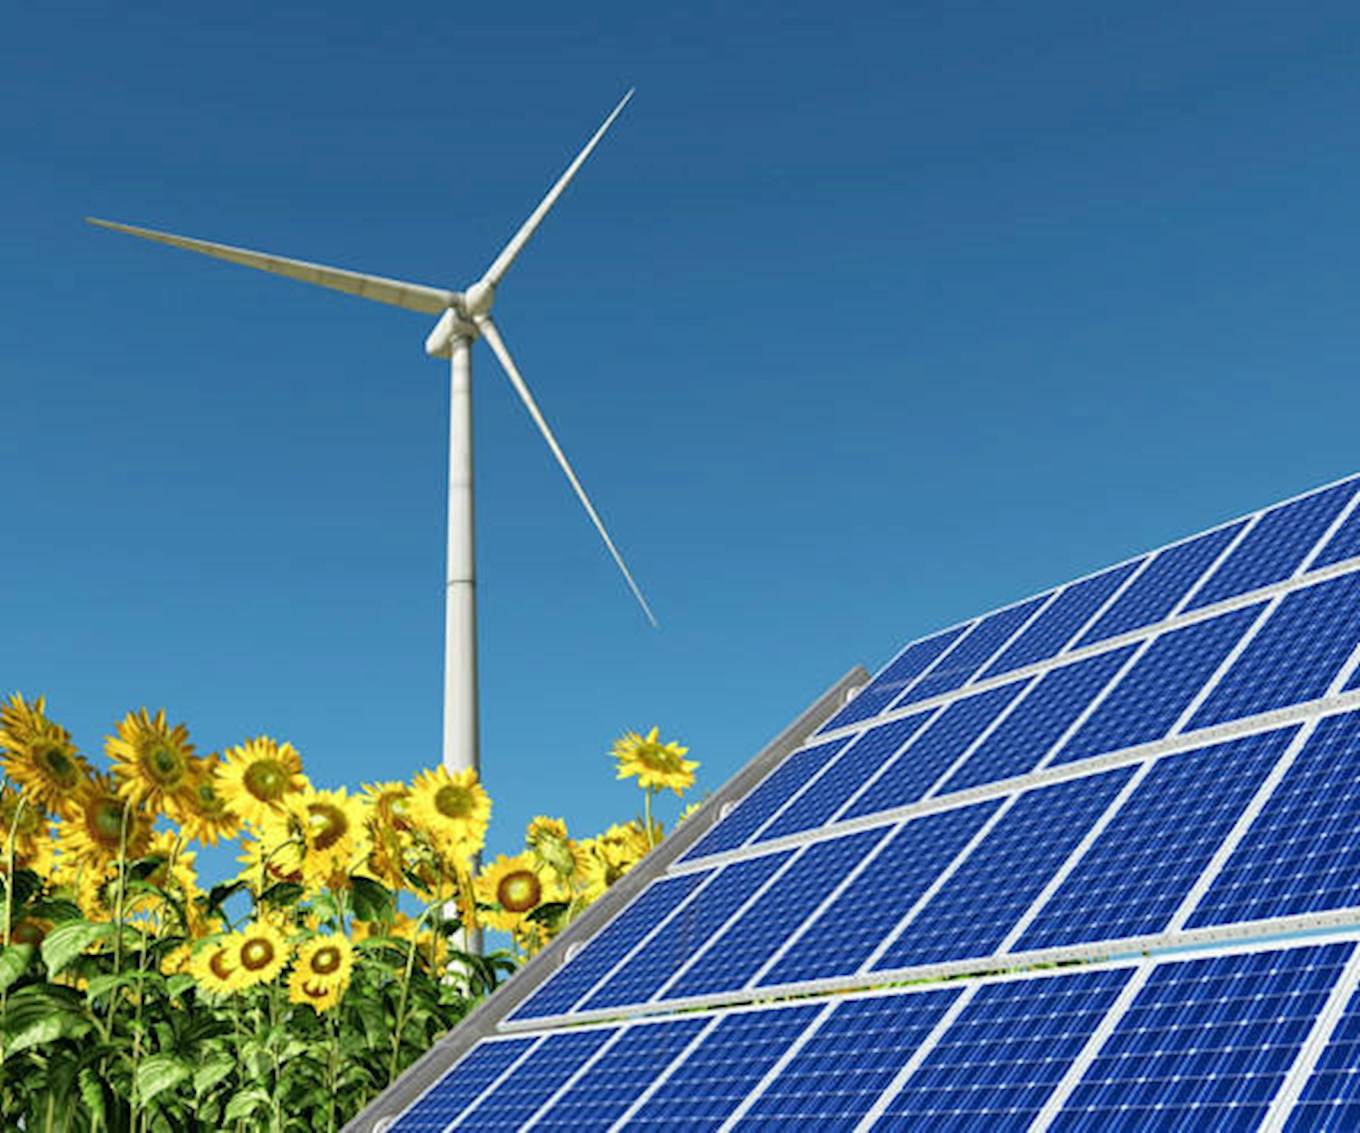 Eine Aufnahme von einer Solaranlage mit Sonnenblumen und einer Windkraftanlage. Im Hintergrund sieht man blauen wolkenlosen Himmel.